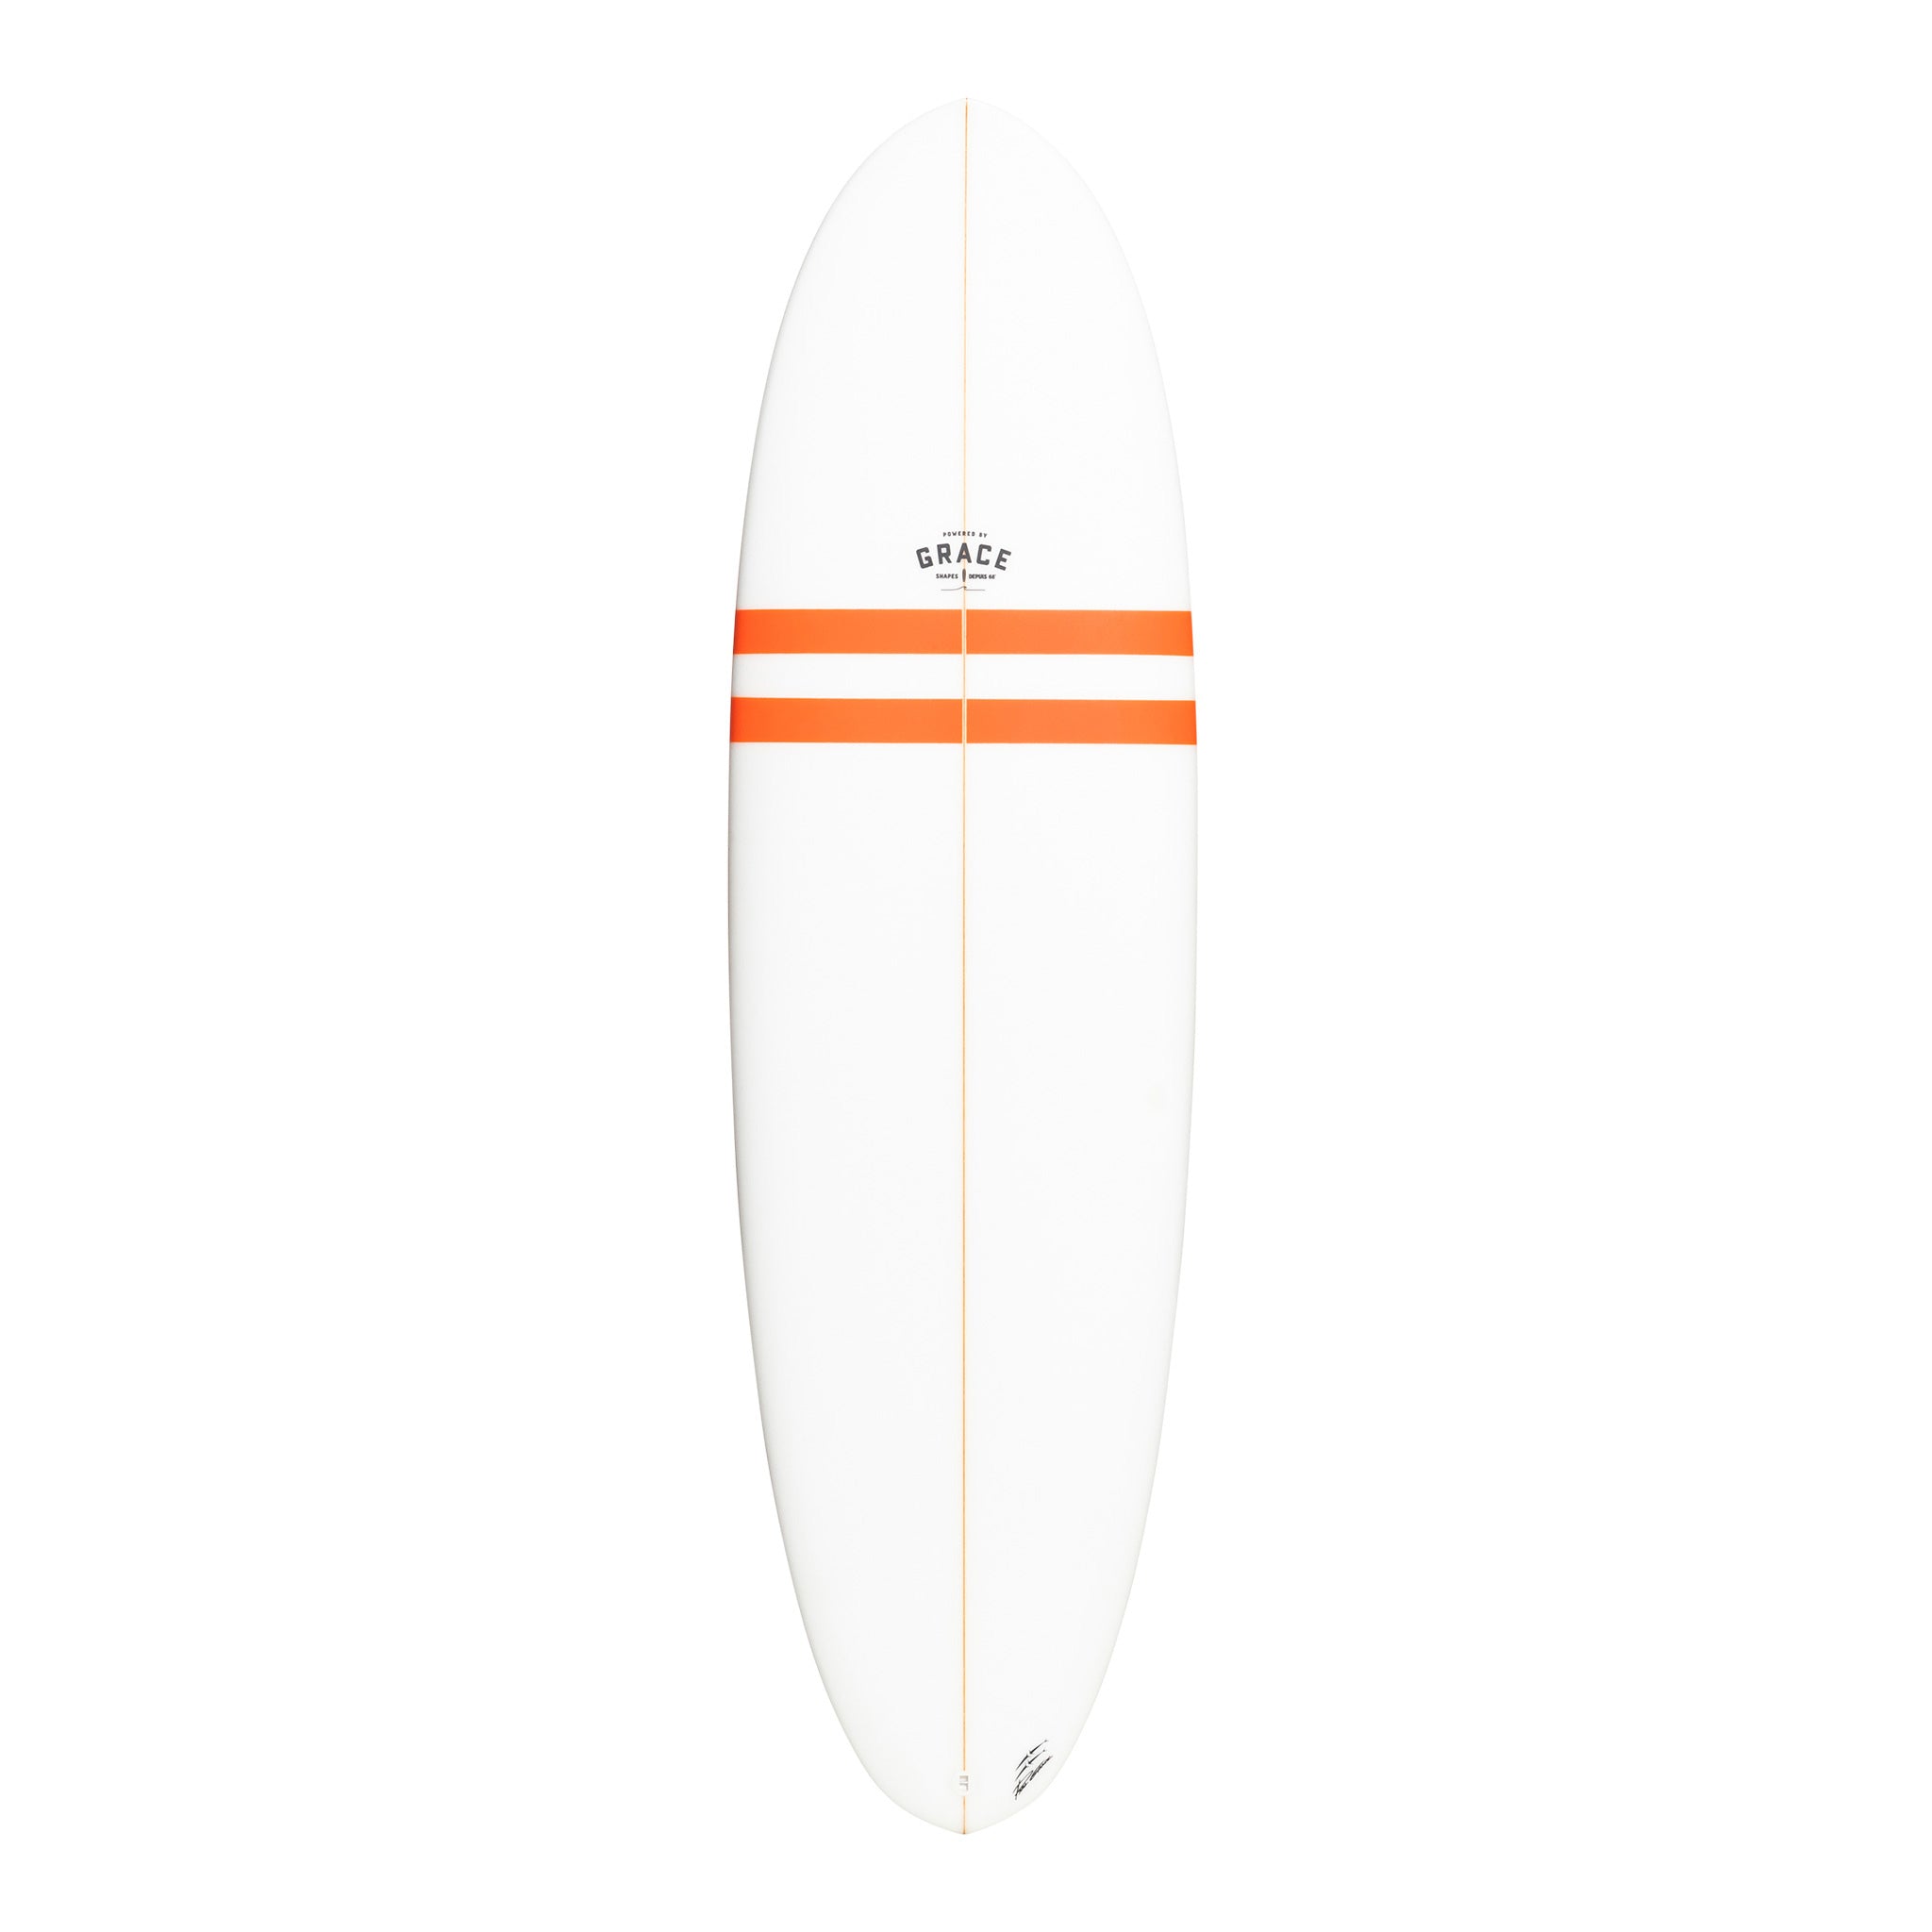 Phil Grace Surfboard 2Bu